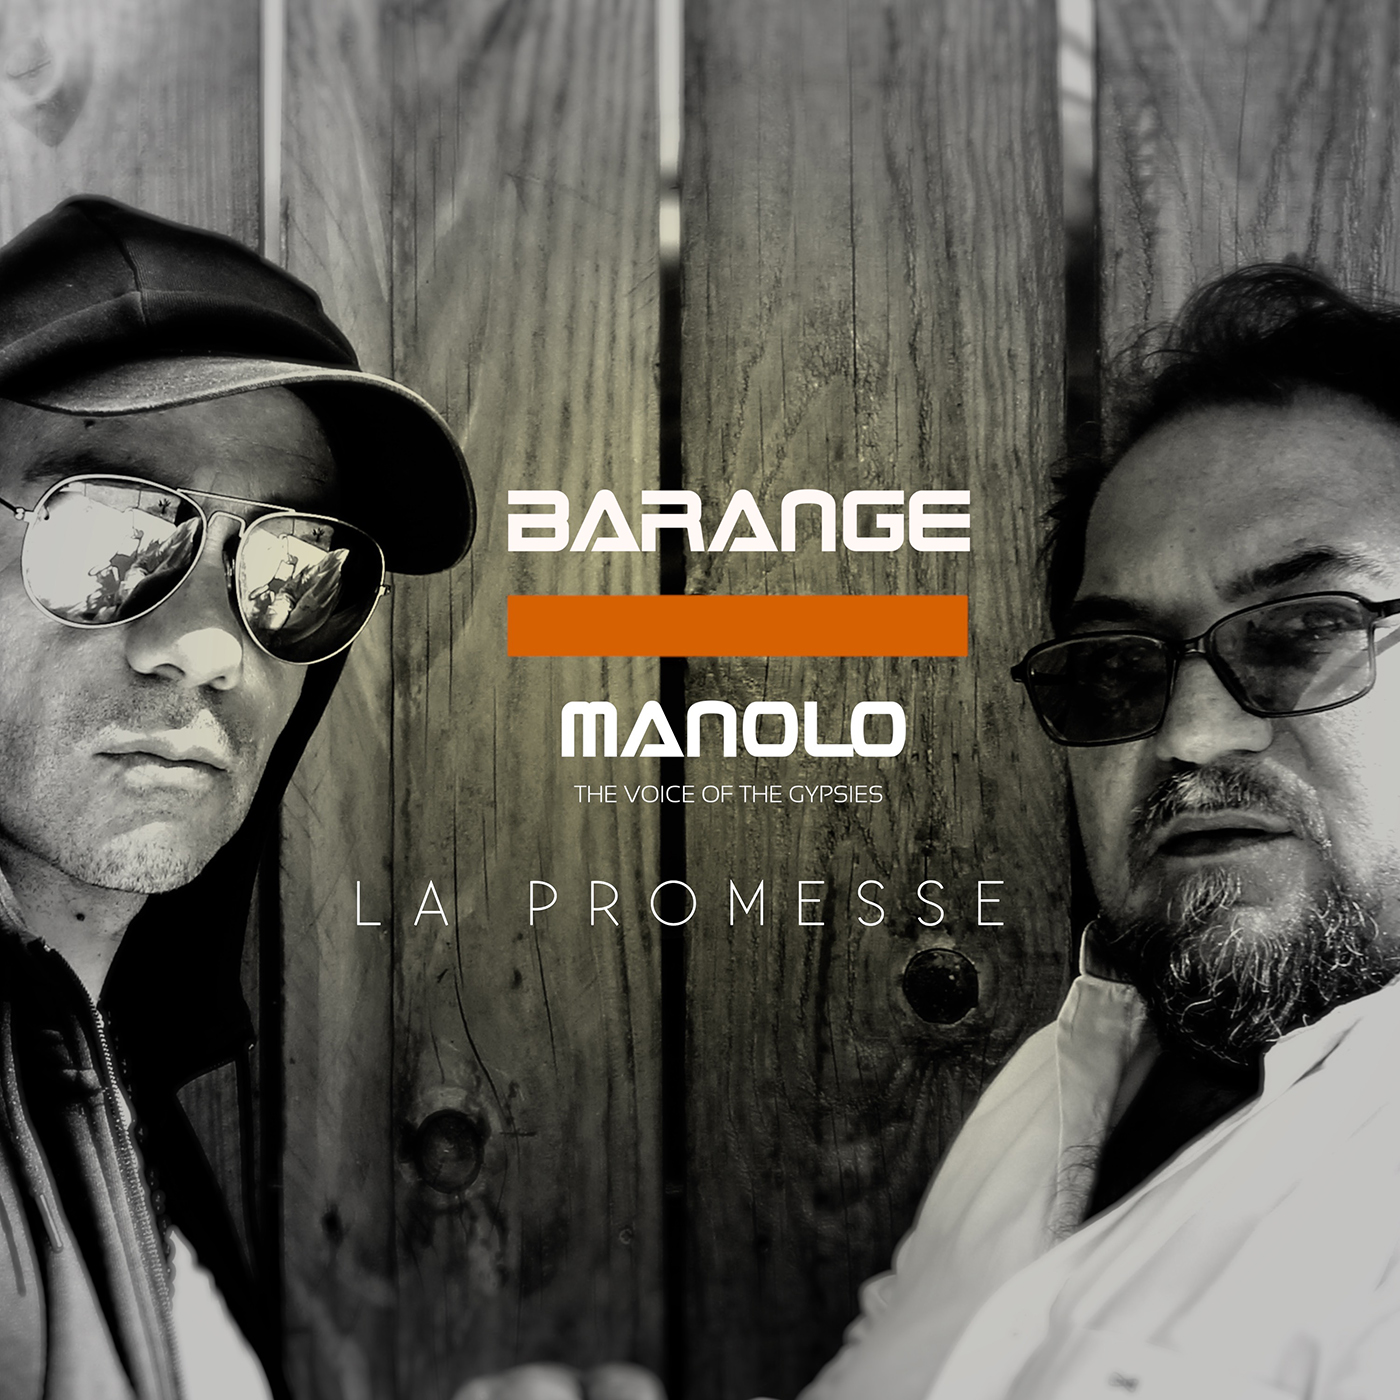 Barange 11,2 k abonnés BARANGE - La promesse ft. MANOLO The Voice Of The Gypsies